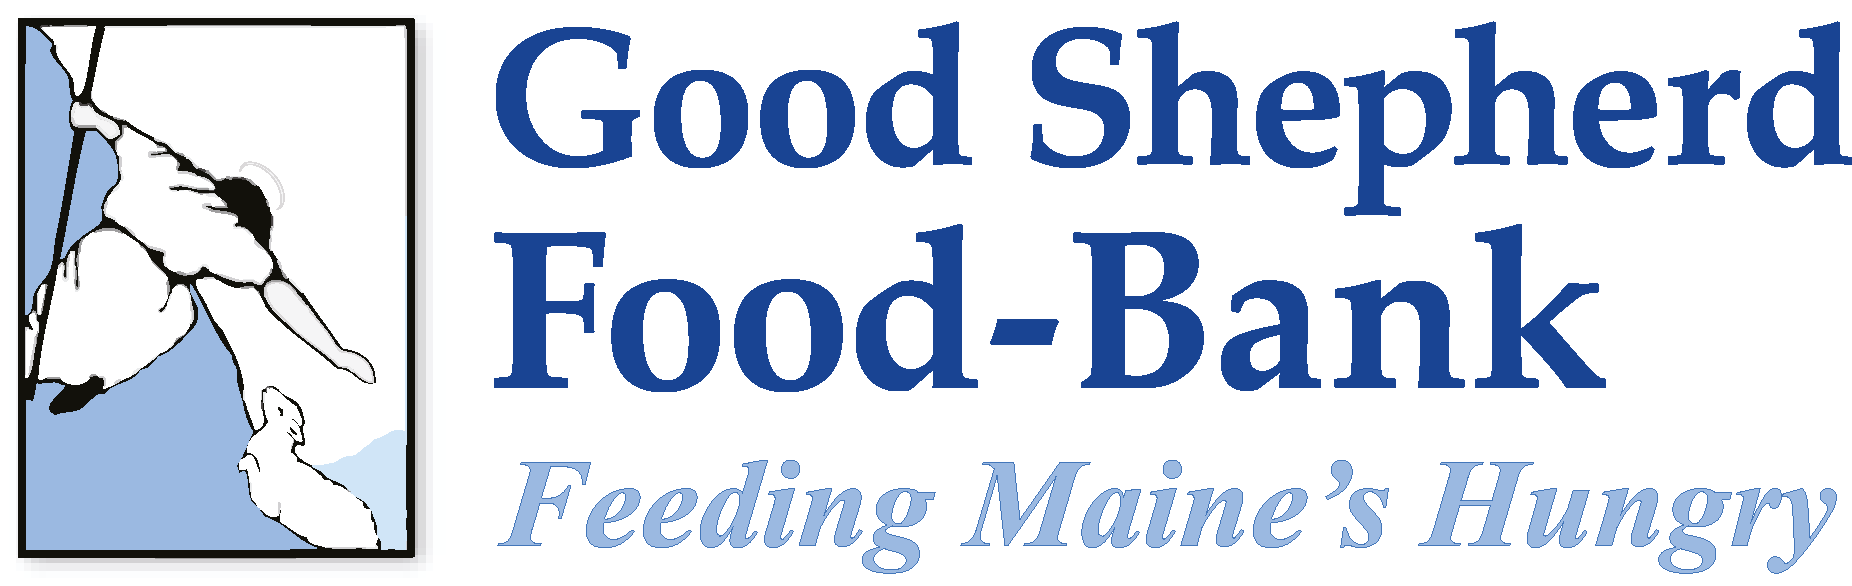 Good Shepherd Food Bank Logo Vector